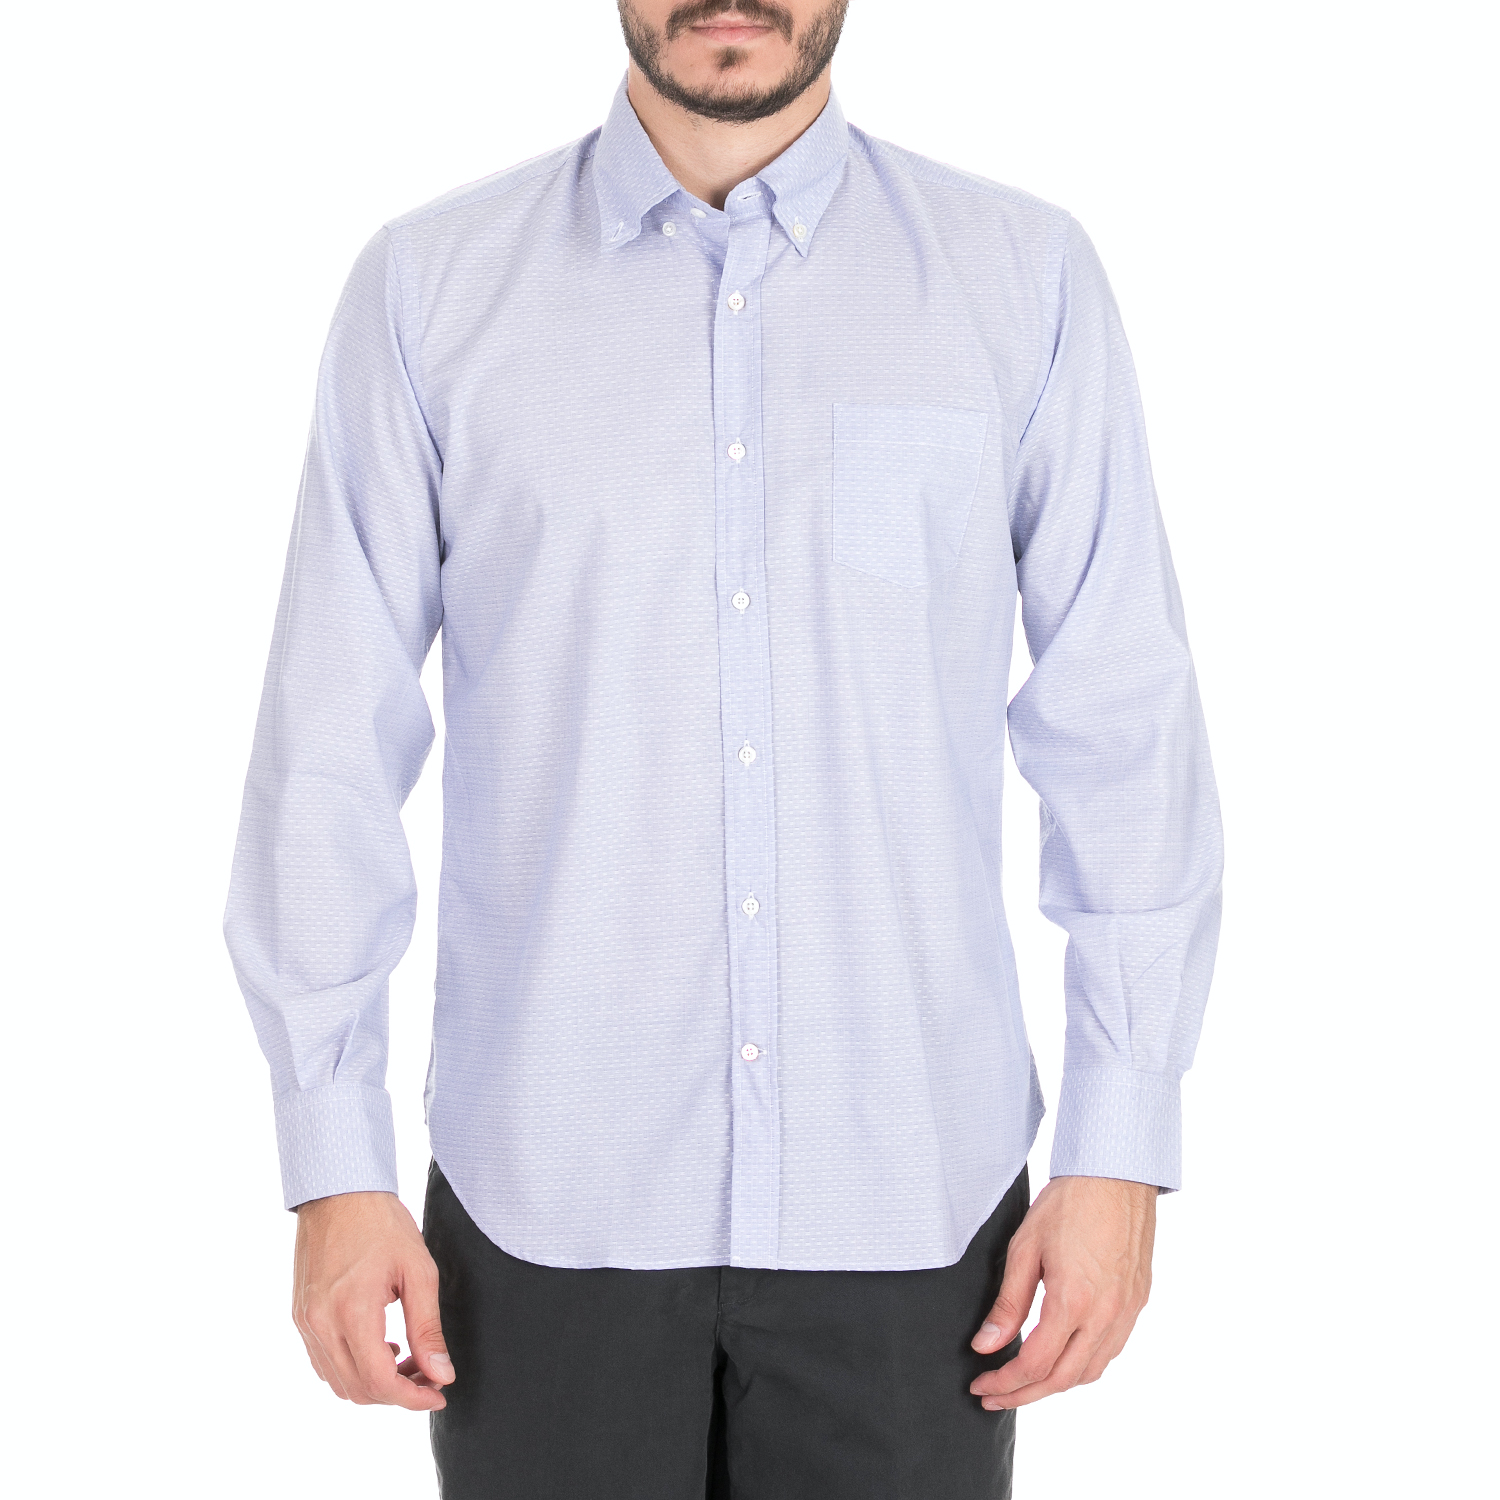 Ανδρικά/Ρούχα/Πουκάμισα/Μακρυμάνικα BROOKSFIELD - Ανδρικό πουκάμισο BROOKSFIELD λιλά λευκό